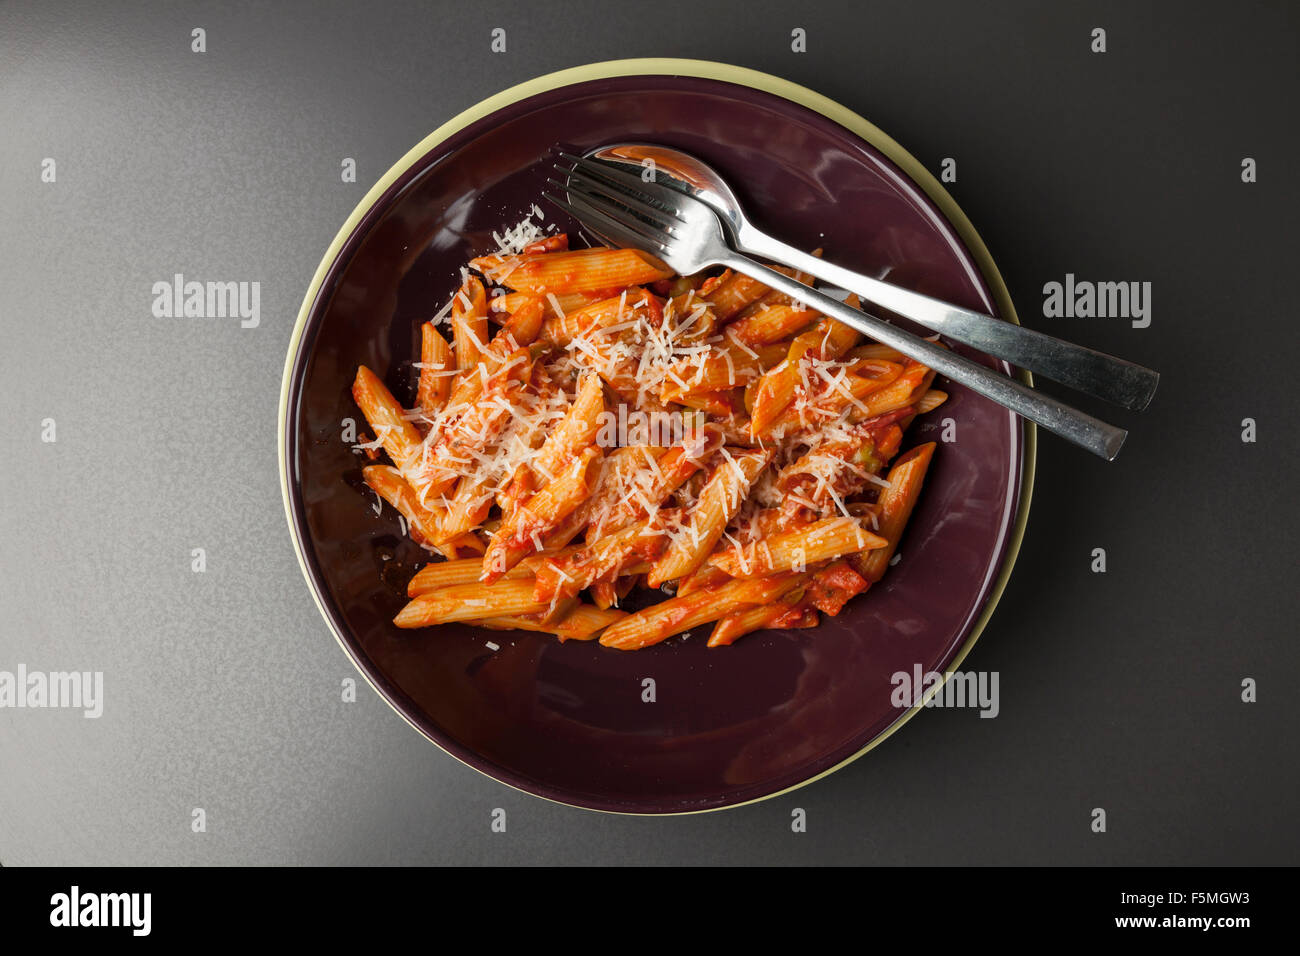 pasta, italian food on the table Stock Photo